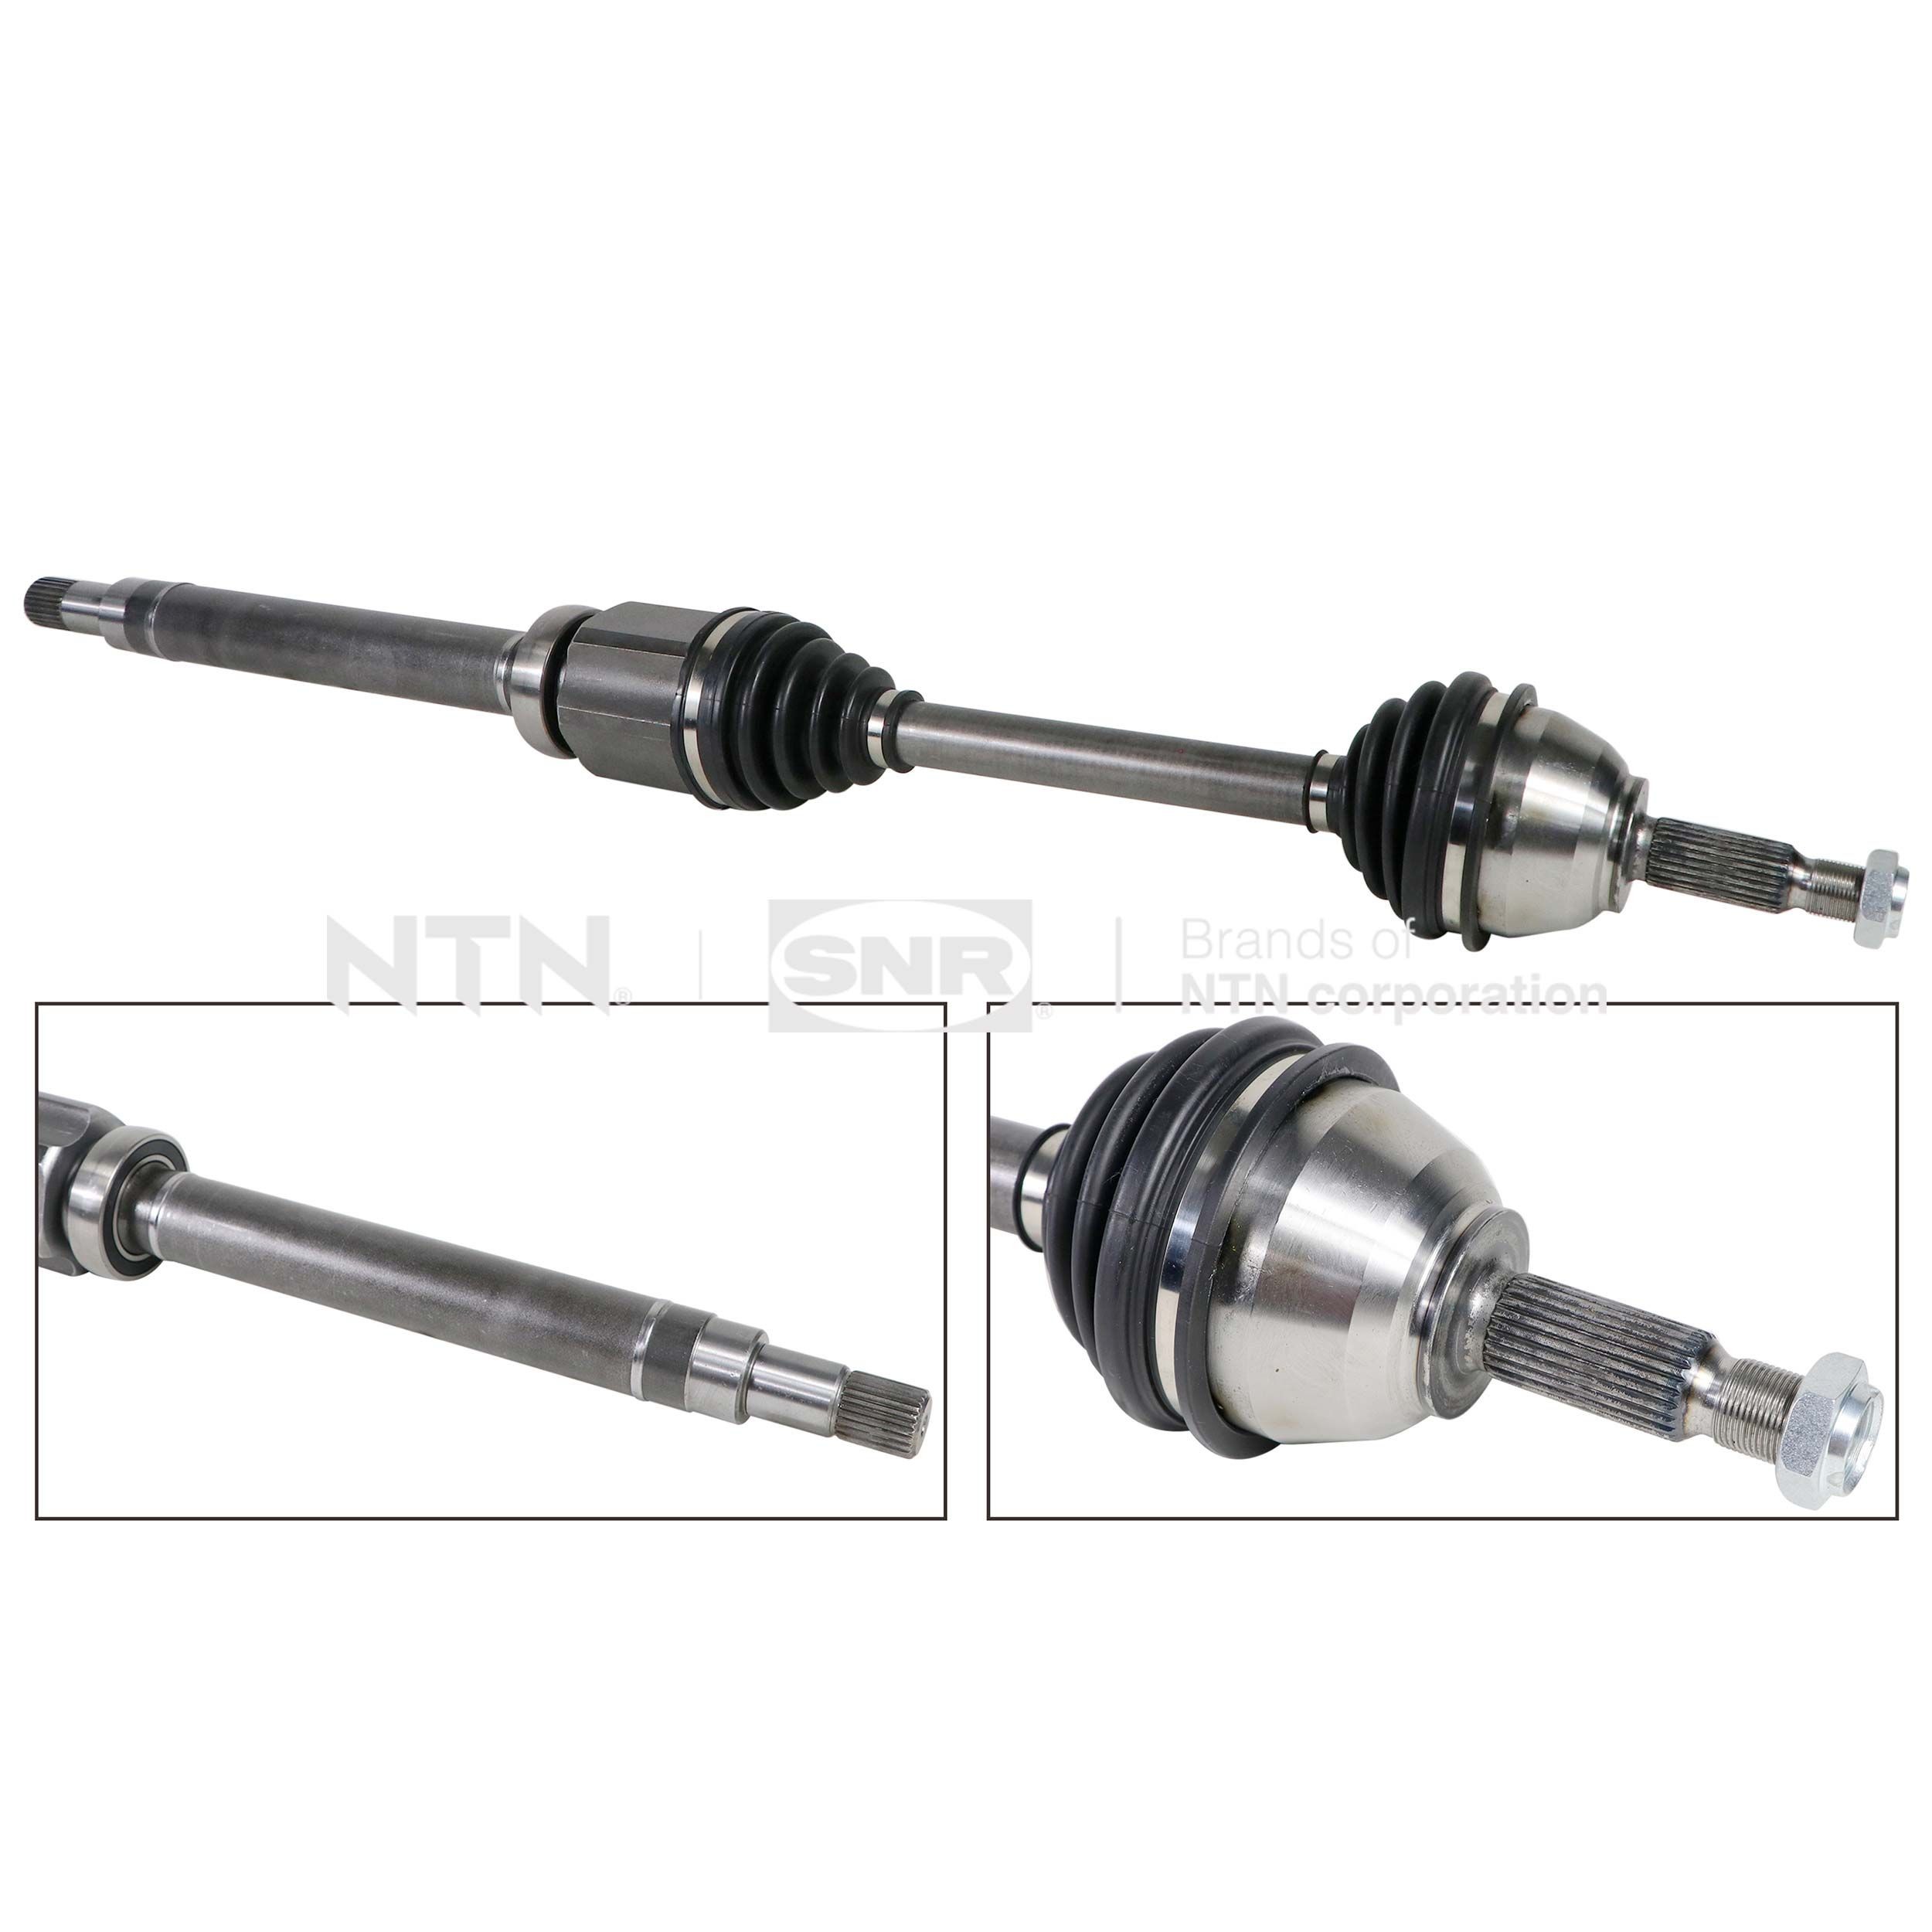 SNR DK52.018 Drive shaft 2T14-3B436-AH